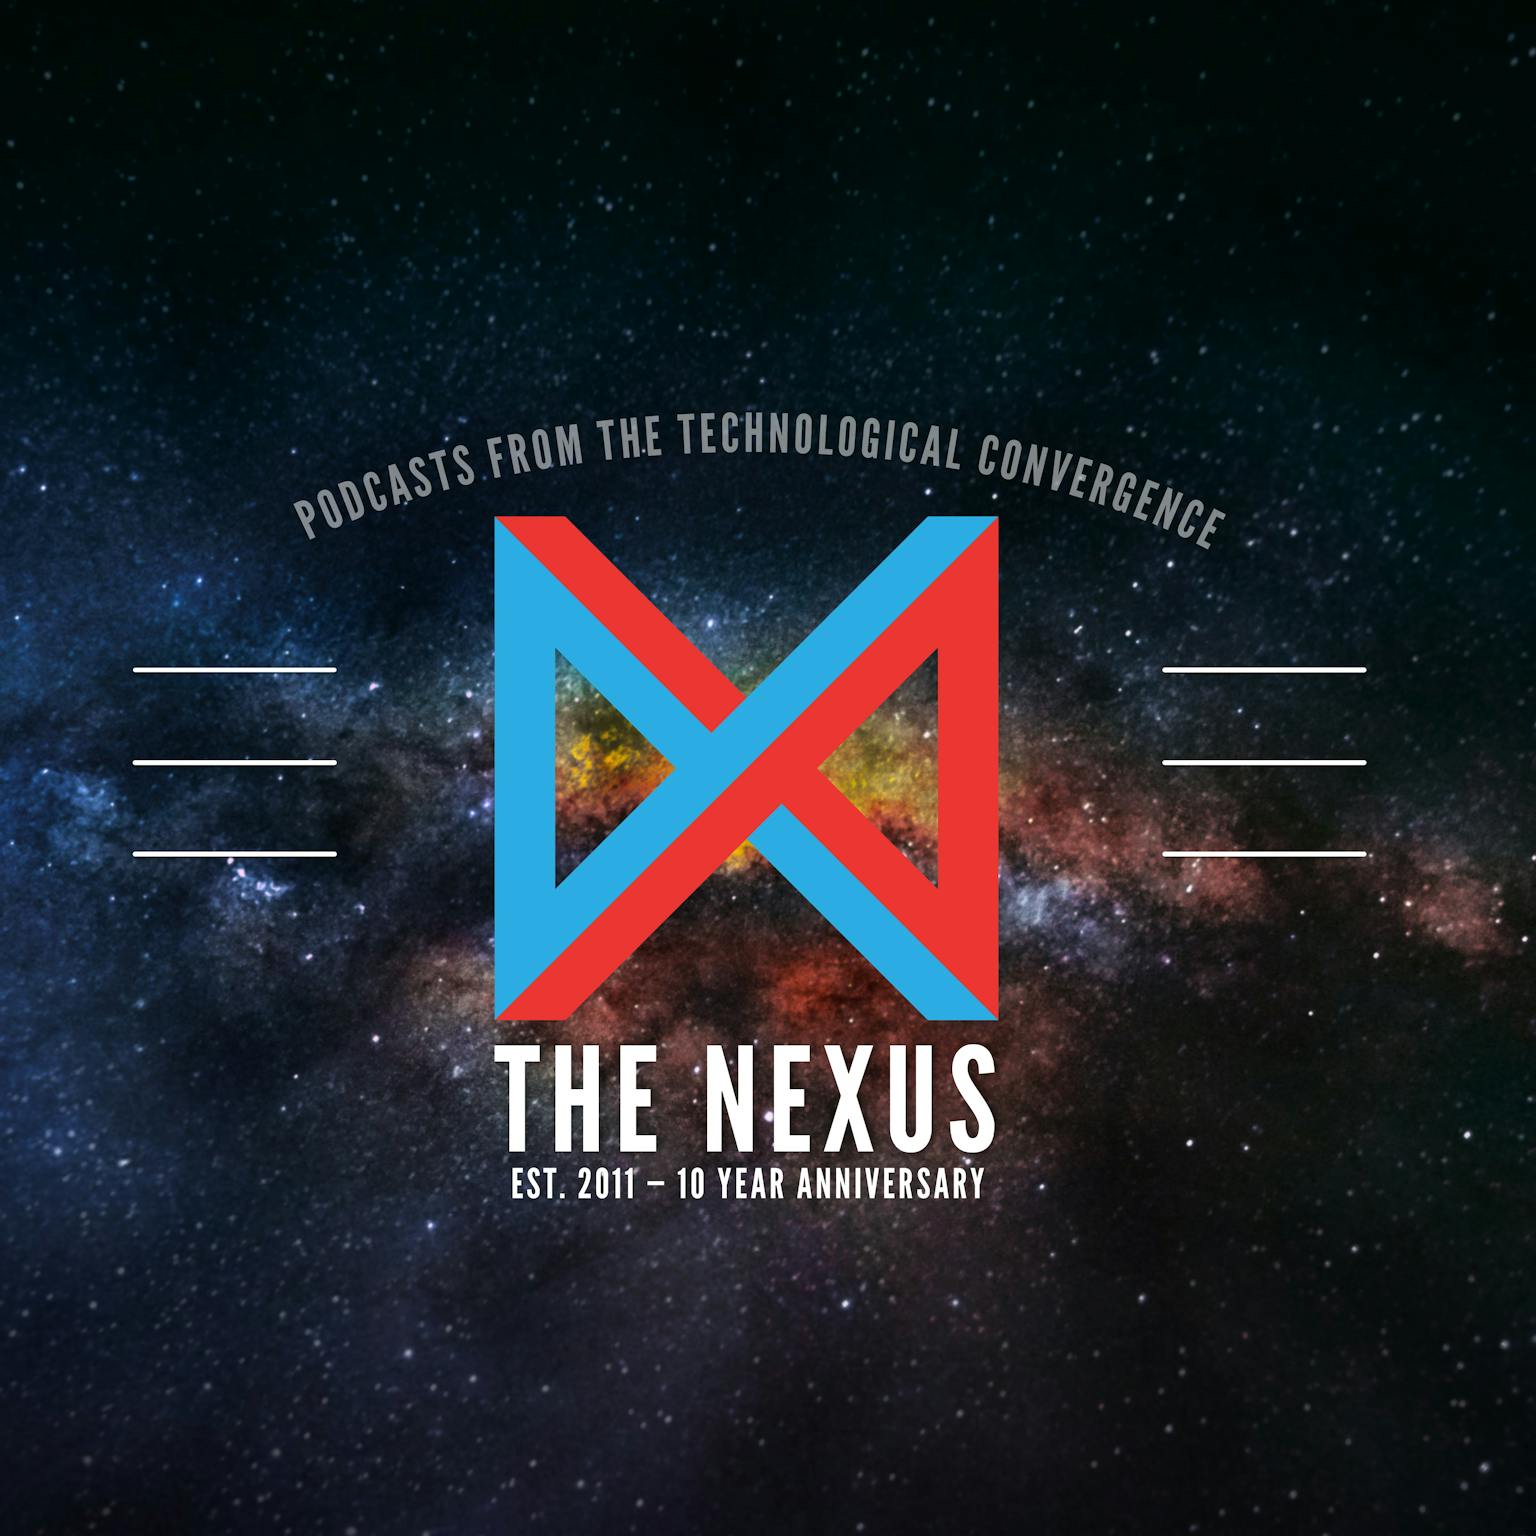 The Nexus: 10 Year Anniversary Commemorative Art